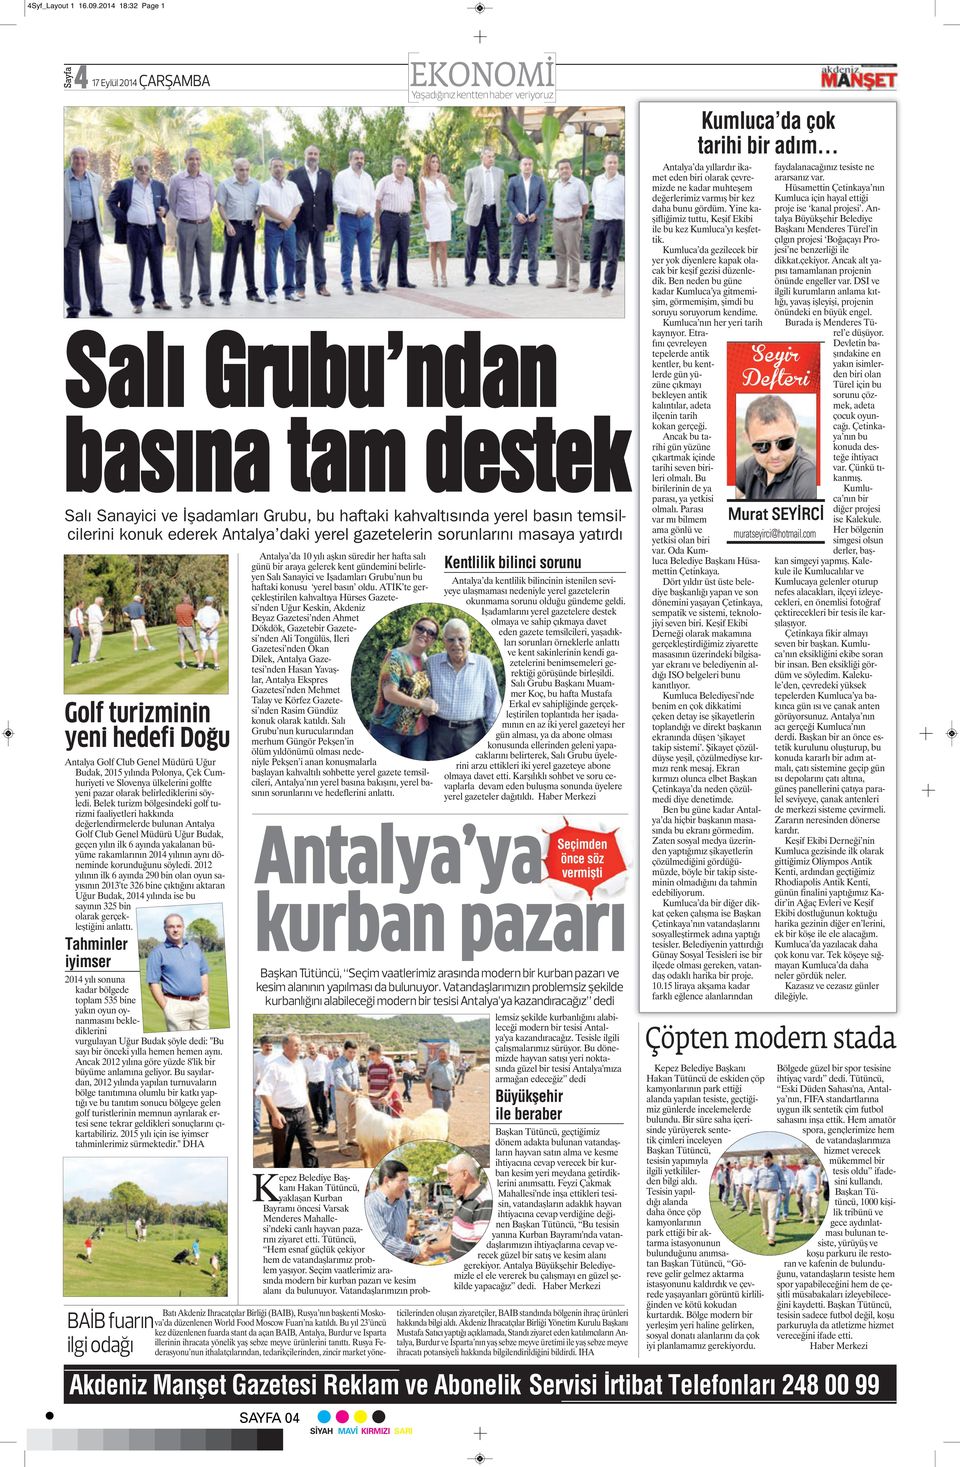 Antalya daki yerel gazetelerin sorunlarını masaya yatırdı Golf turizminin yeni hedefi Doğu Antalya Golf Club Genel Müdürü Uğur Budak, 2015 yılında Polonya, Çek Cumhuriyeti ve Slovenya ülkelerini